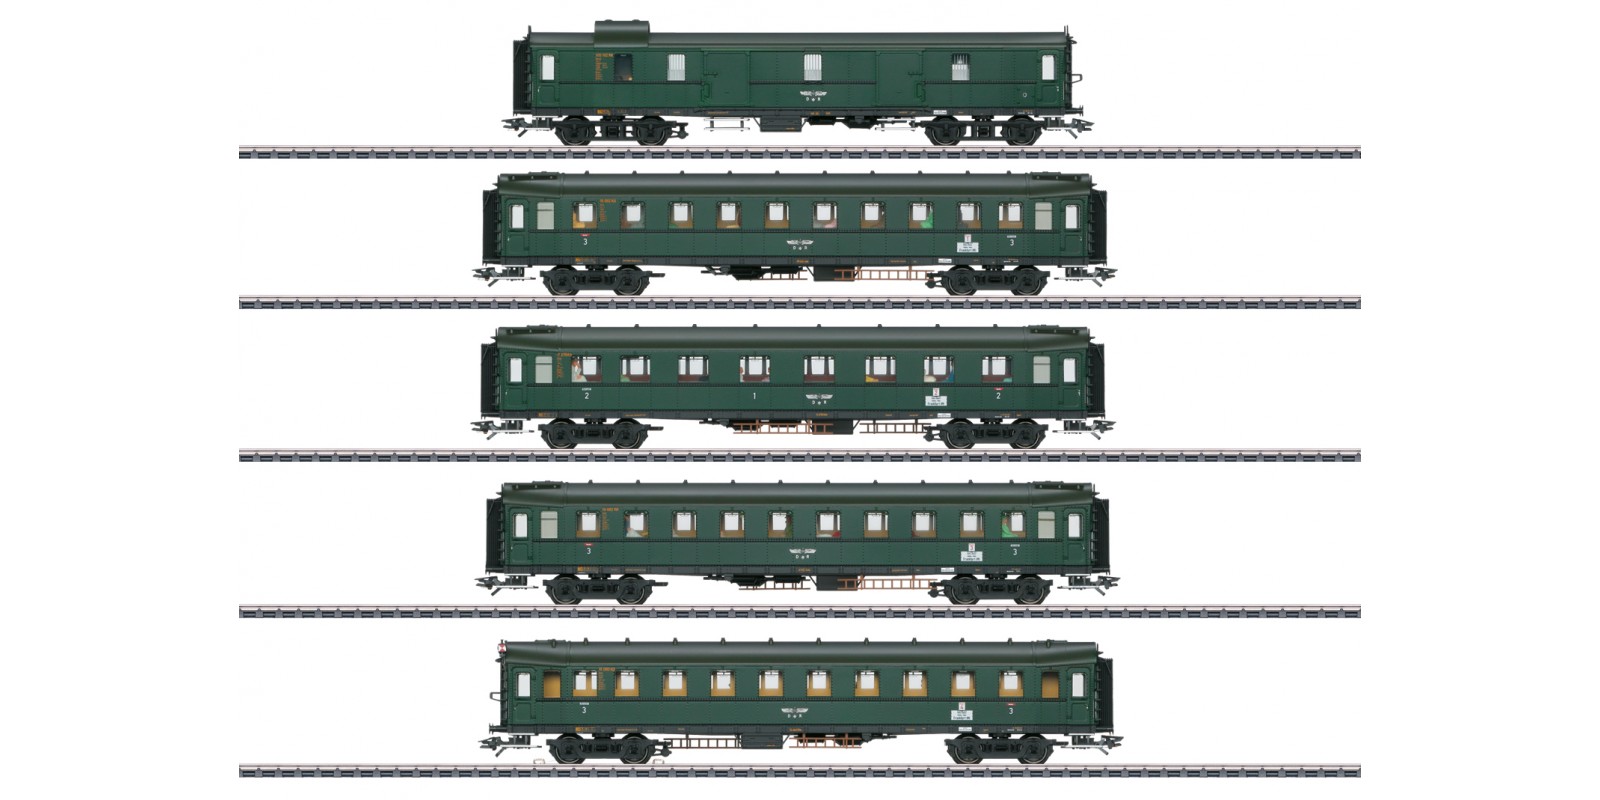 42265 “Hechtwagen” / “Pike Cars” Express Train Passenger Car Set